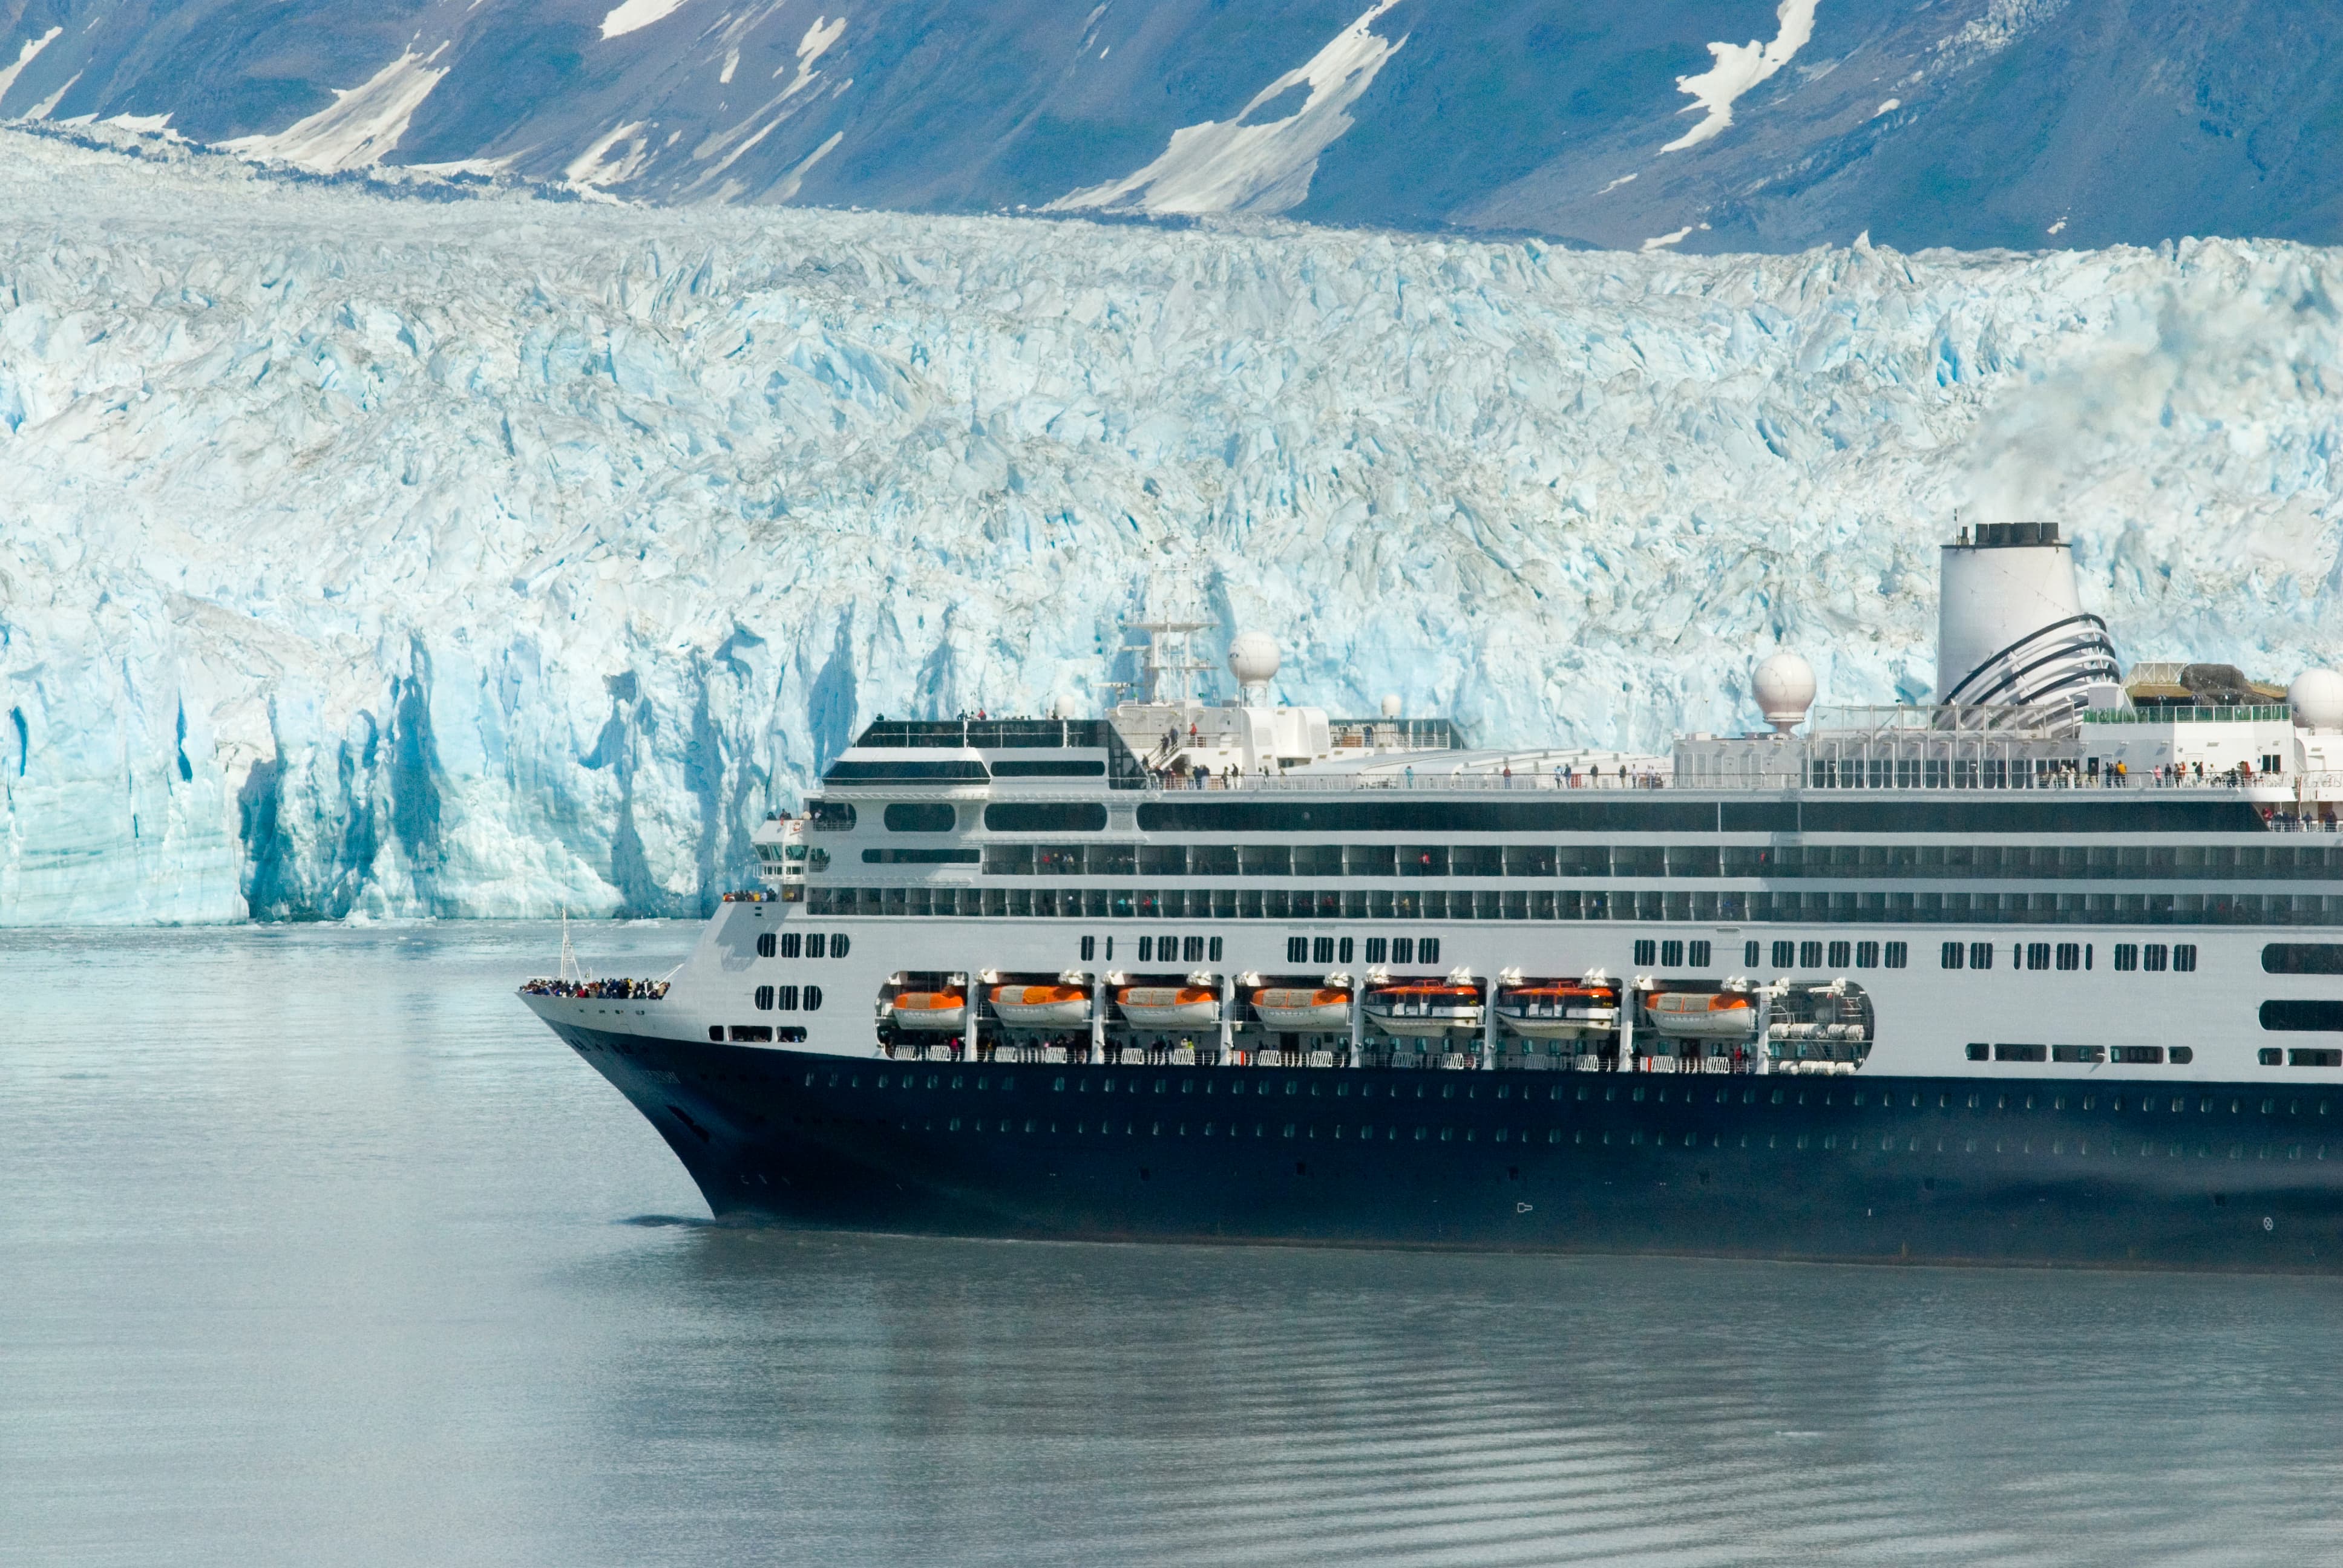 Alaskan cruise ship drifting near a glacier